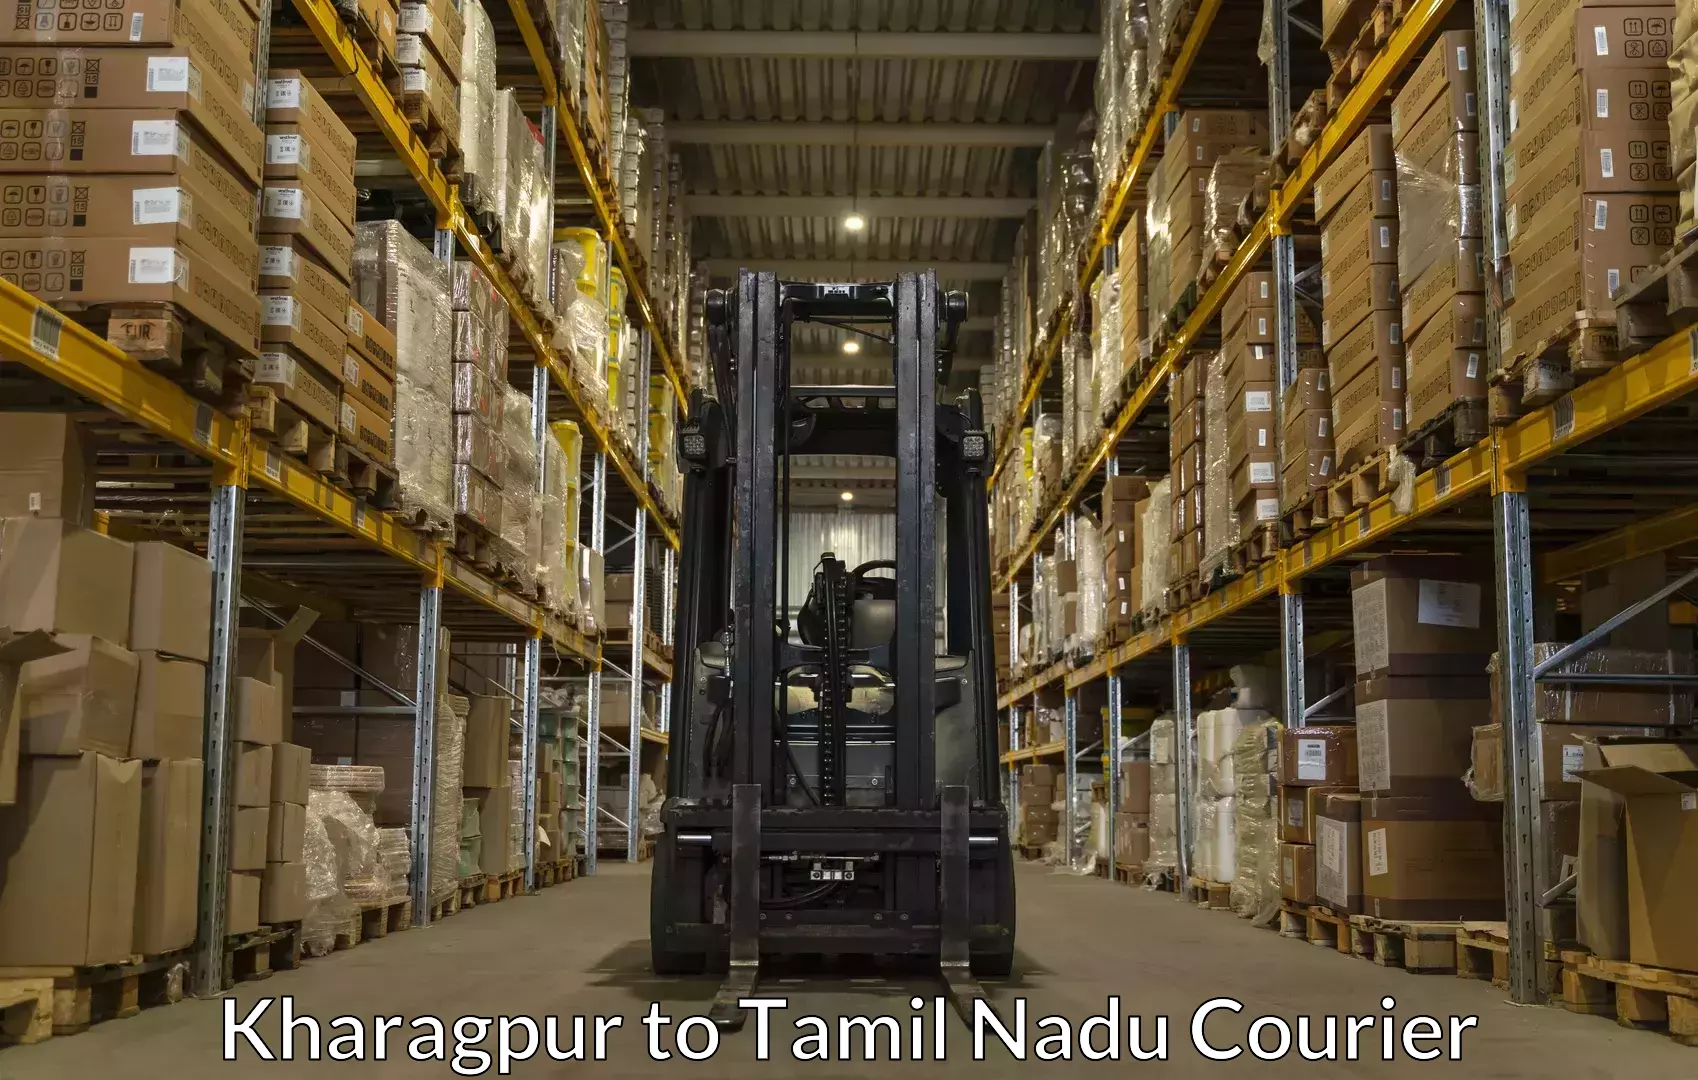 Luggage shipment tracking Kharagpur to Chennai Port